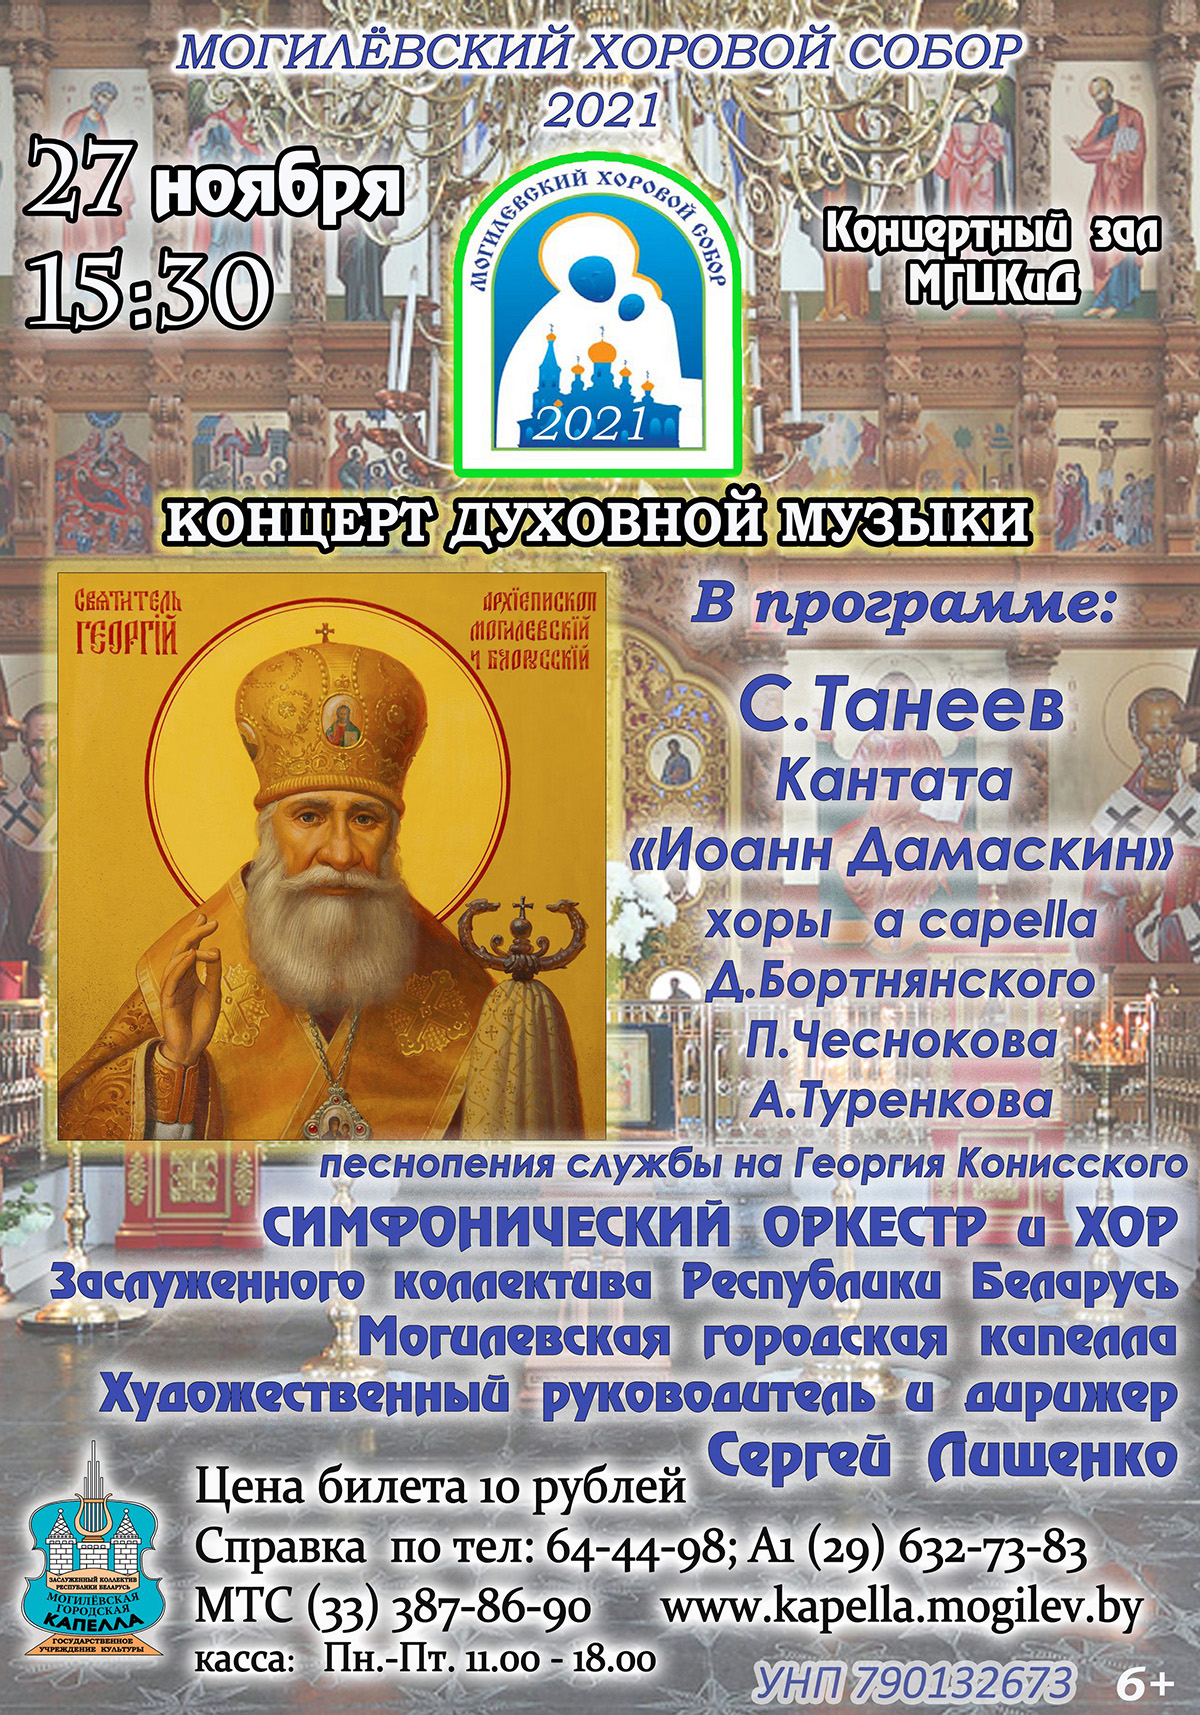 Концерт духовной музыки пройдет 27 ноября в Могилеве